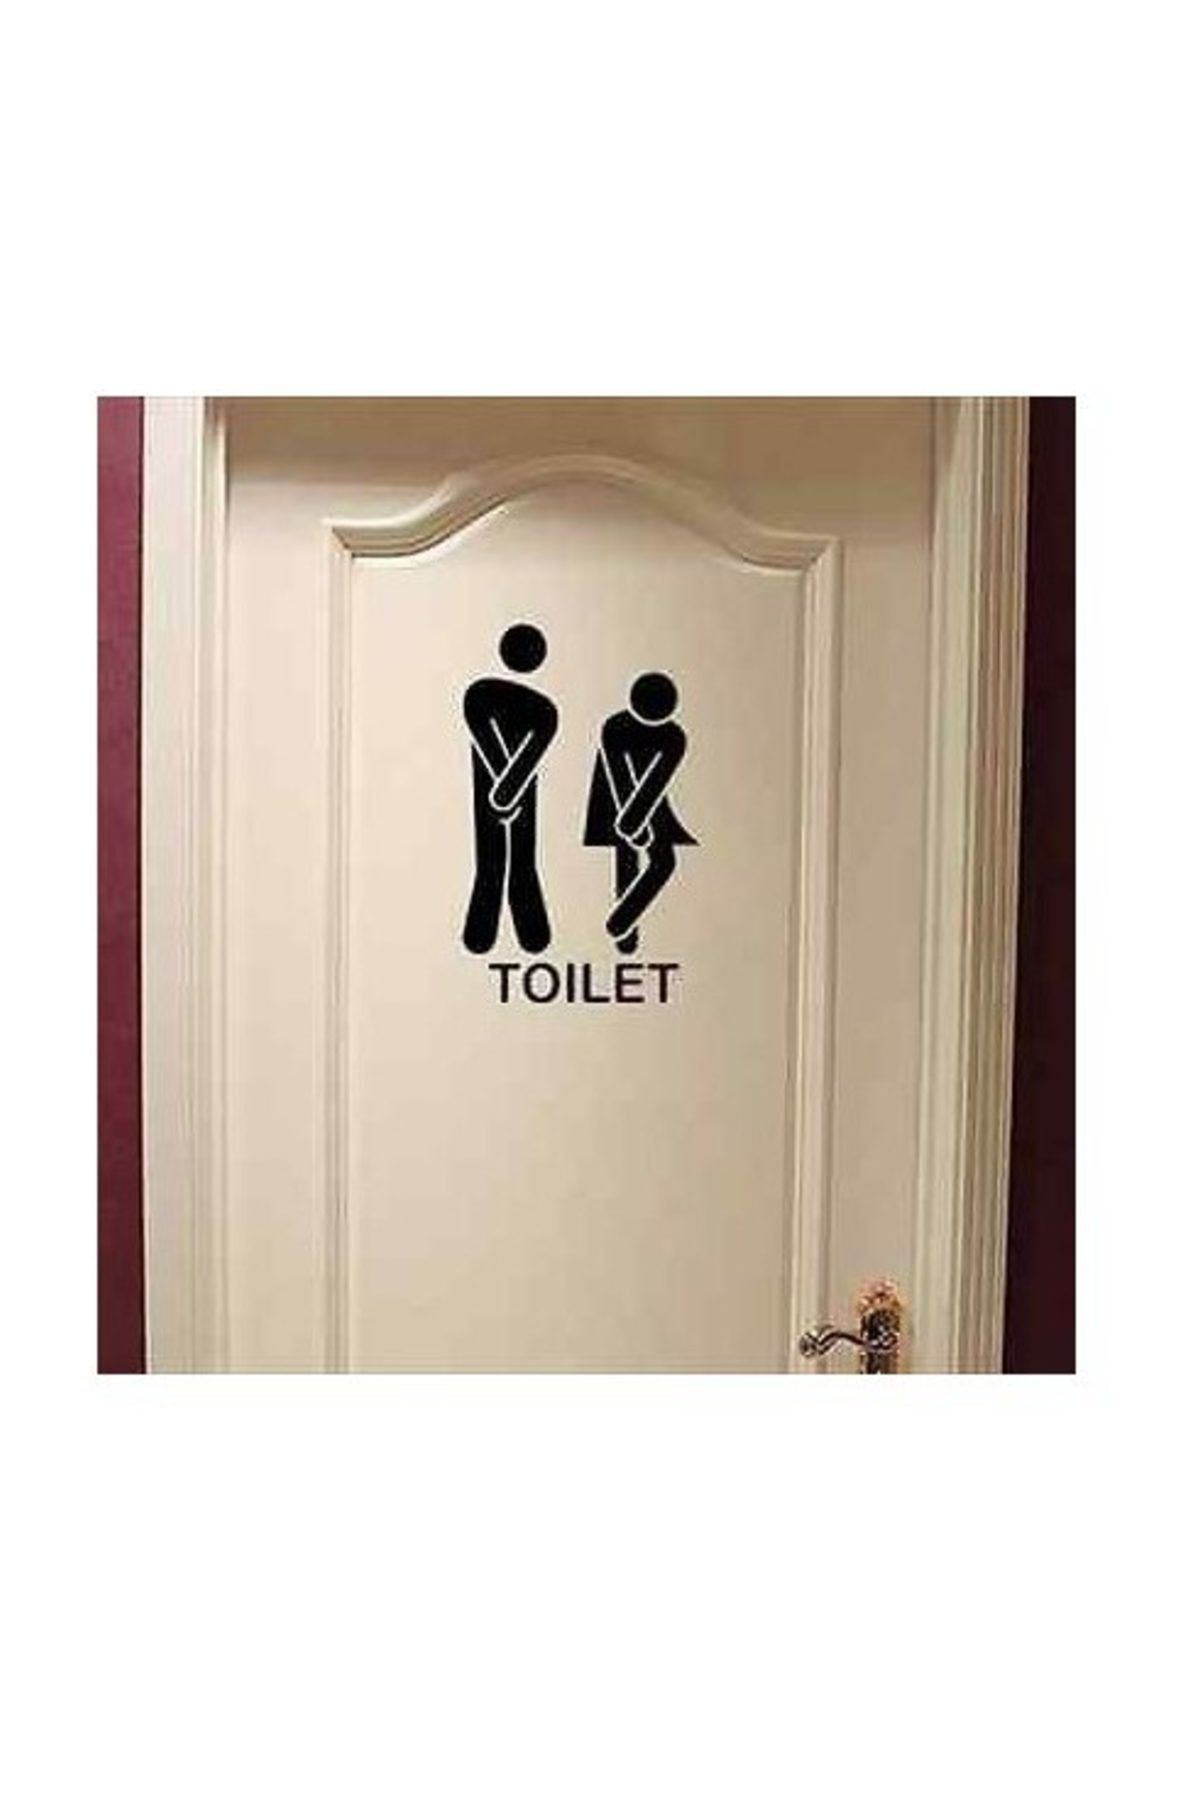 Sticker Sepetim Toilet Kadın Erkek Dekoratif Çok Amaçlı Duvar Sticker